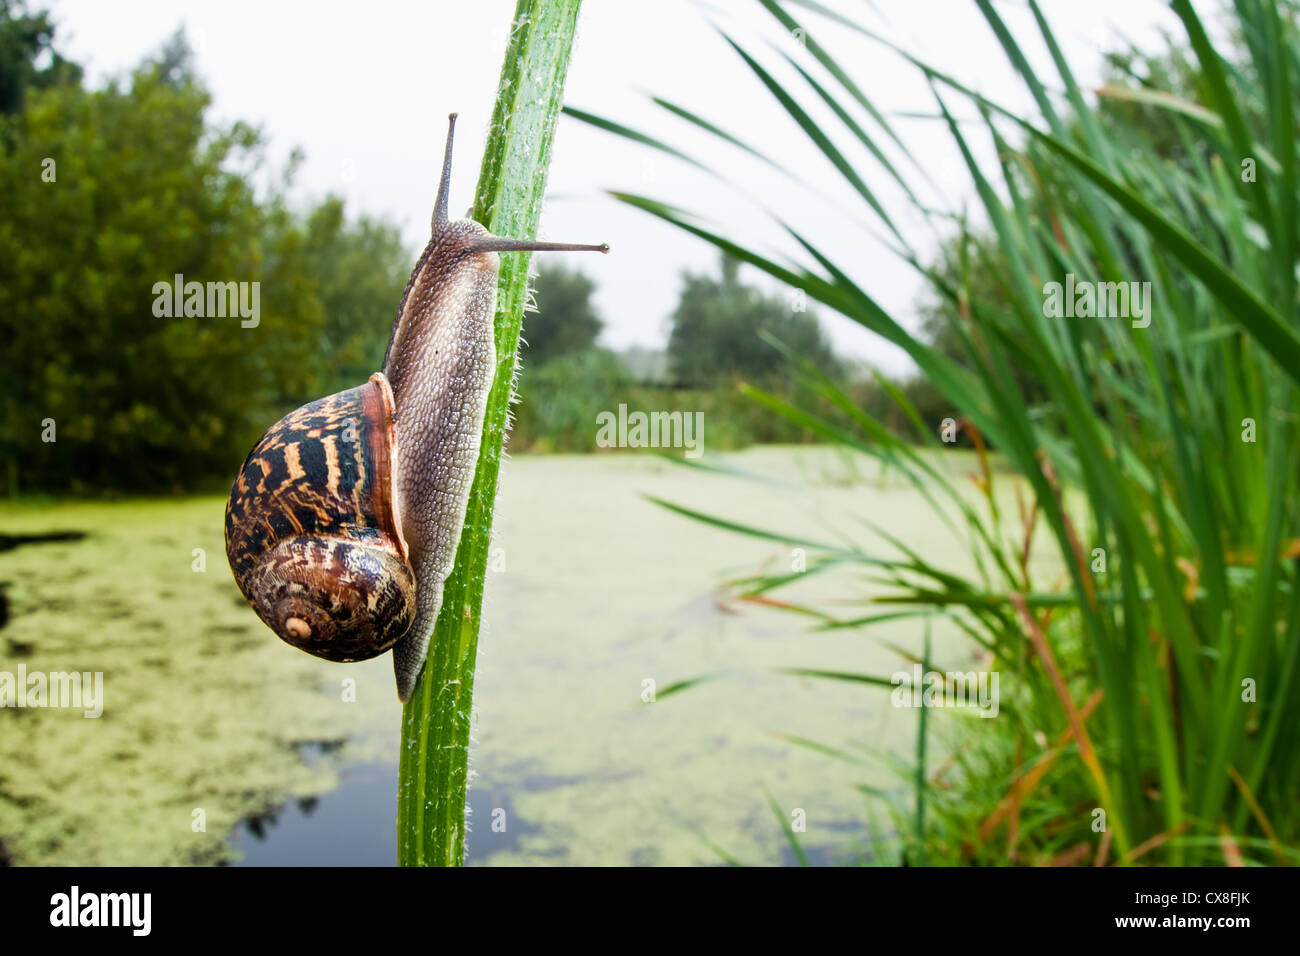 Un caracol trabajando su camino hasta una planta de tallo, con vistas a un estanque cubierto de malezas Foto de stock